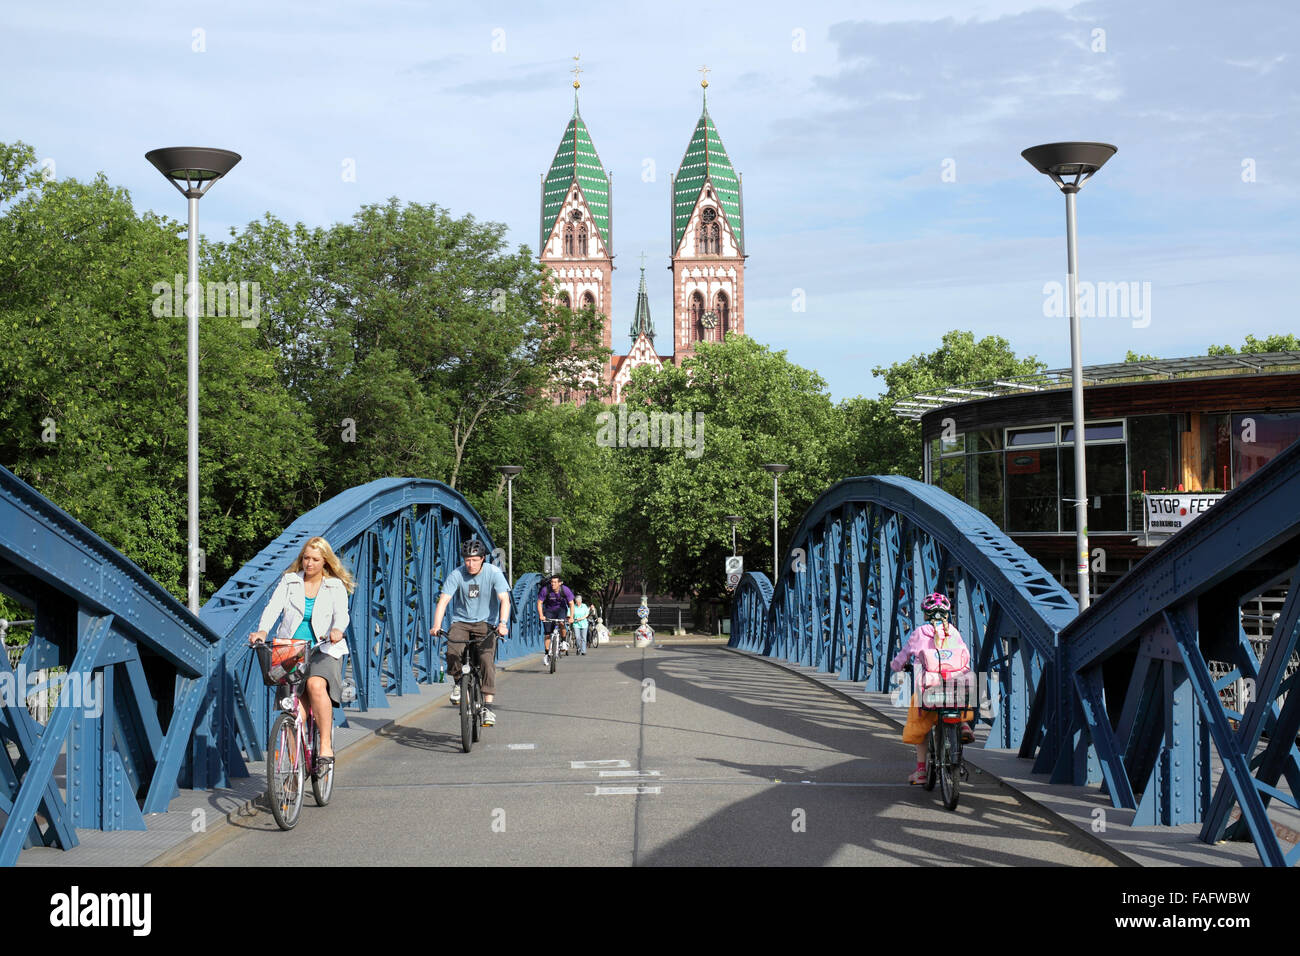 Radfahrer in der morgendlichen Rushhour der blauen Brücke, ein Zyklus/nur für Fußgänger Brücke über Bahnstrecke in Freiburg. Stockfoto